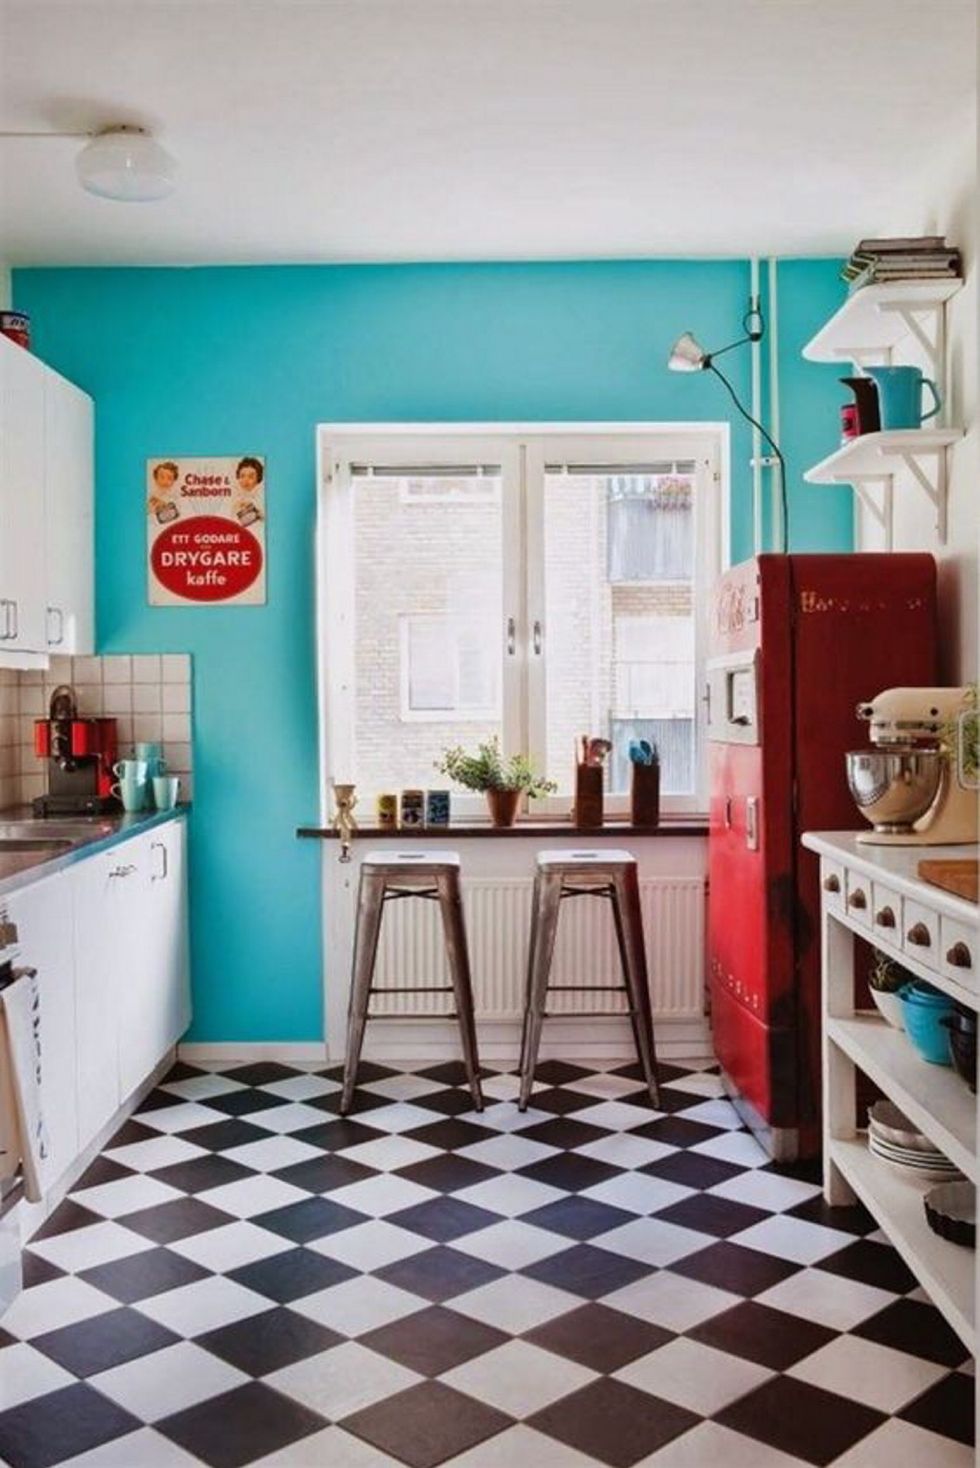 <p>Todo un clásico de las cocinas vintage, se alegre con la pared pintada de azul turquesa y el frigorífico rojo. Los taburetes metálicos son el mod. <i>Tolix.</i></p>